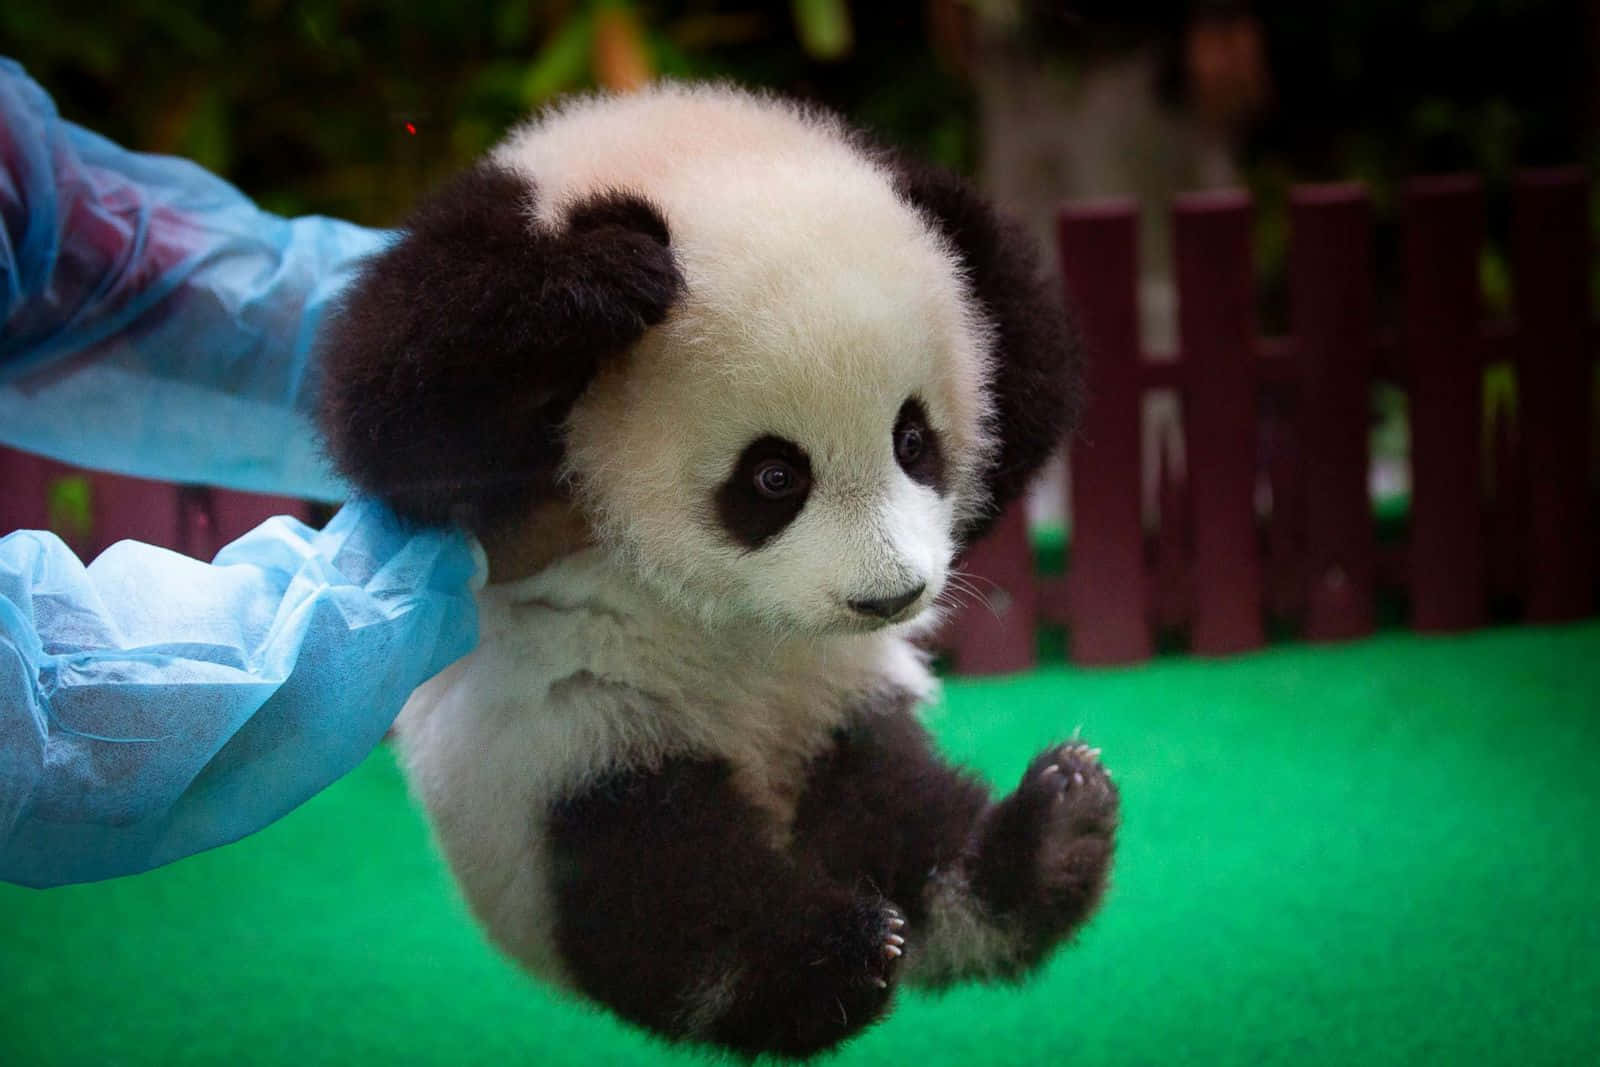 Sødtbillede Af Babydyr, Af En Nuttet Panda.